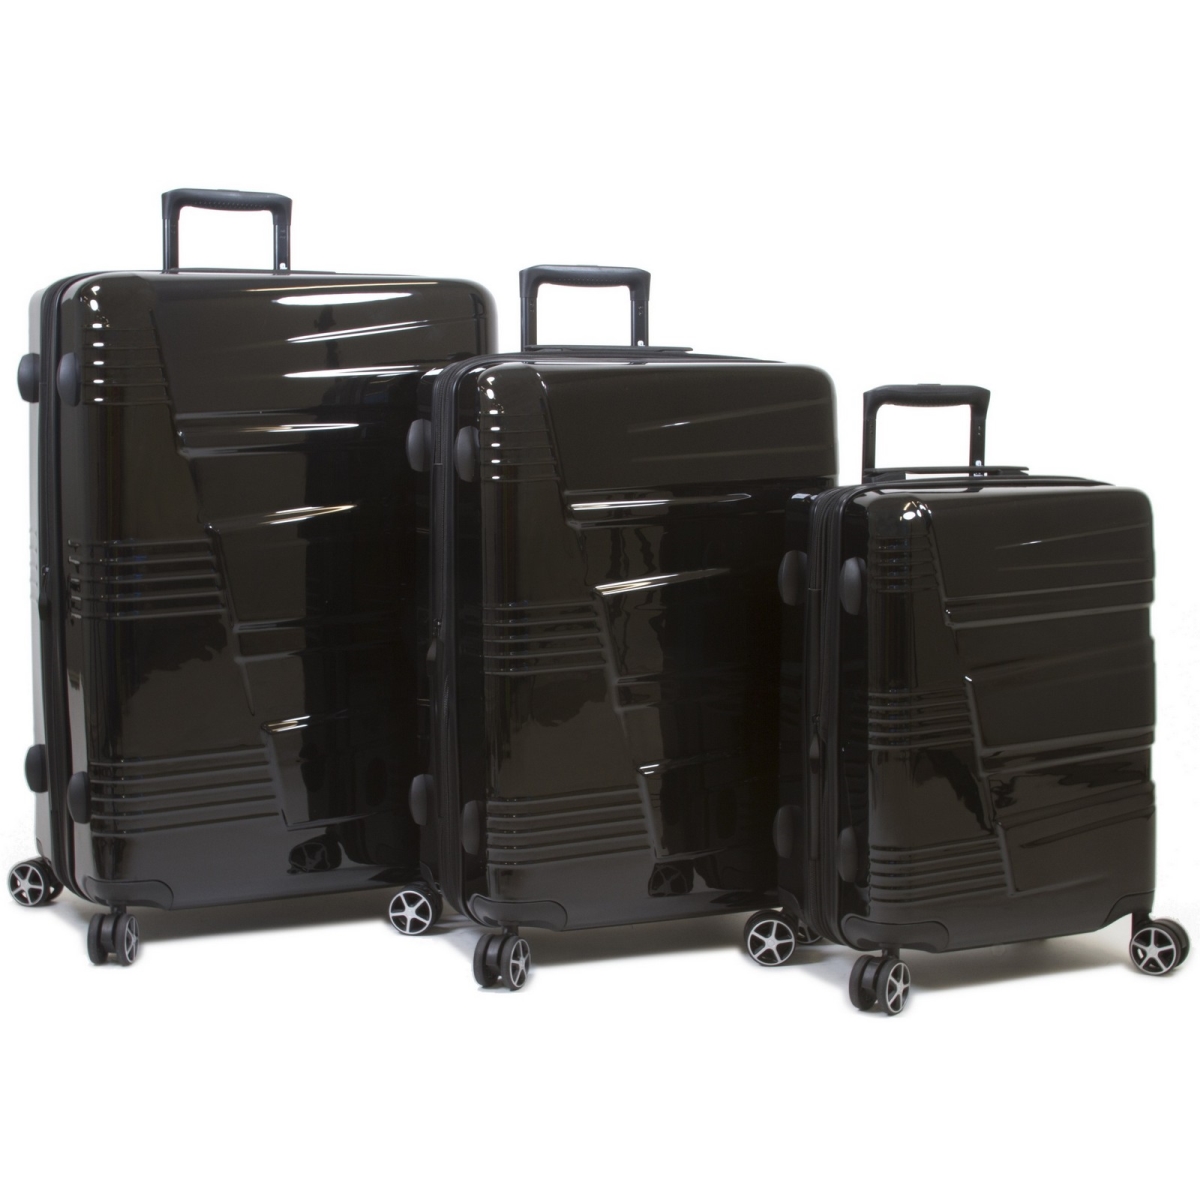 Qualitry Luggage Lumos Hardside Expandable Spinner Luggage Set&#44; Black - 3 Piece